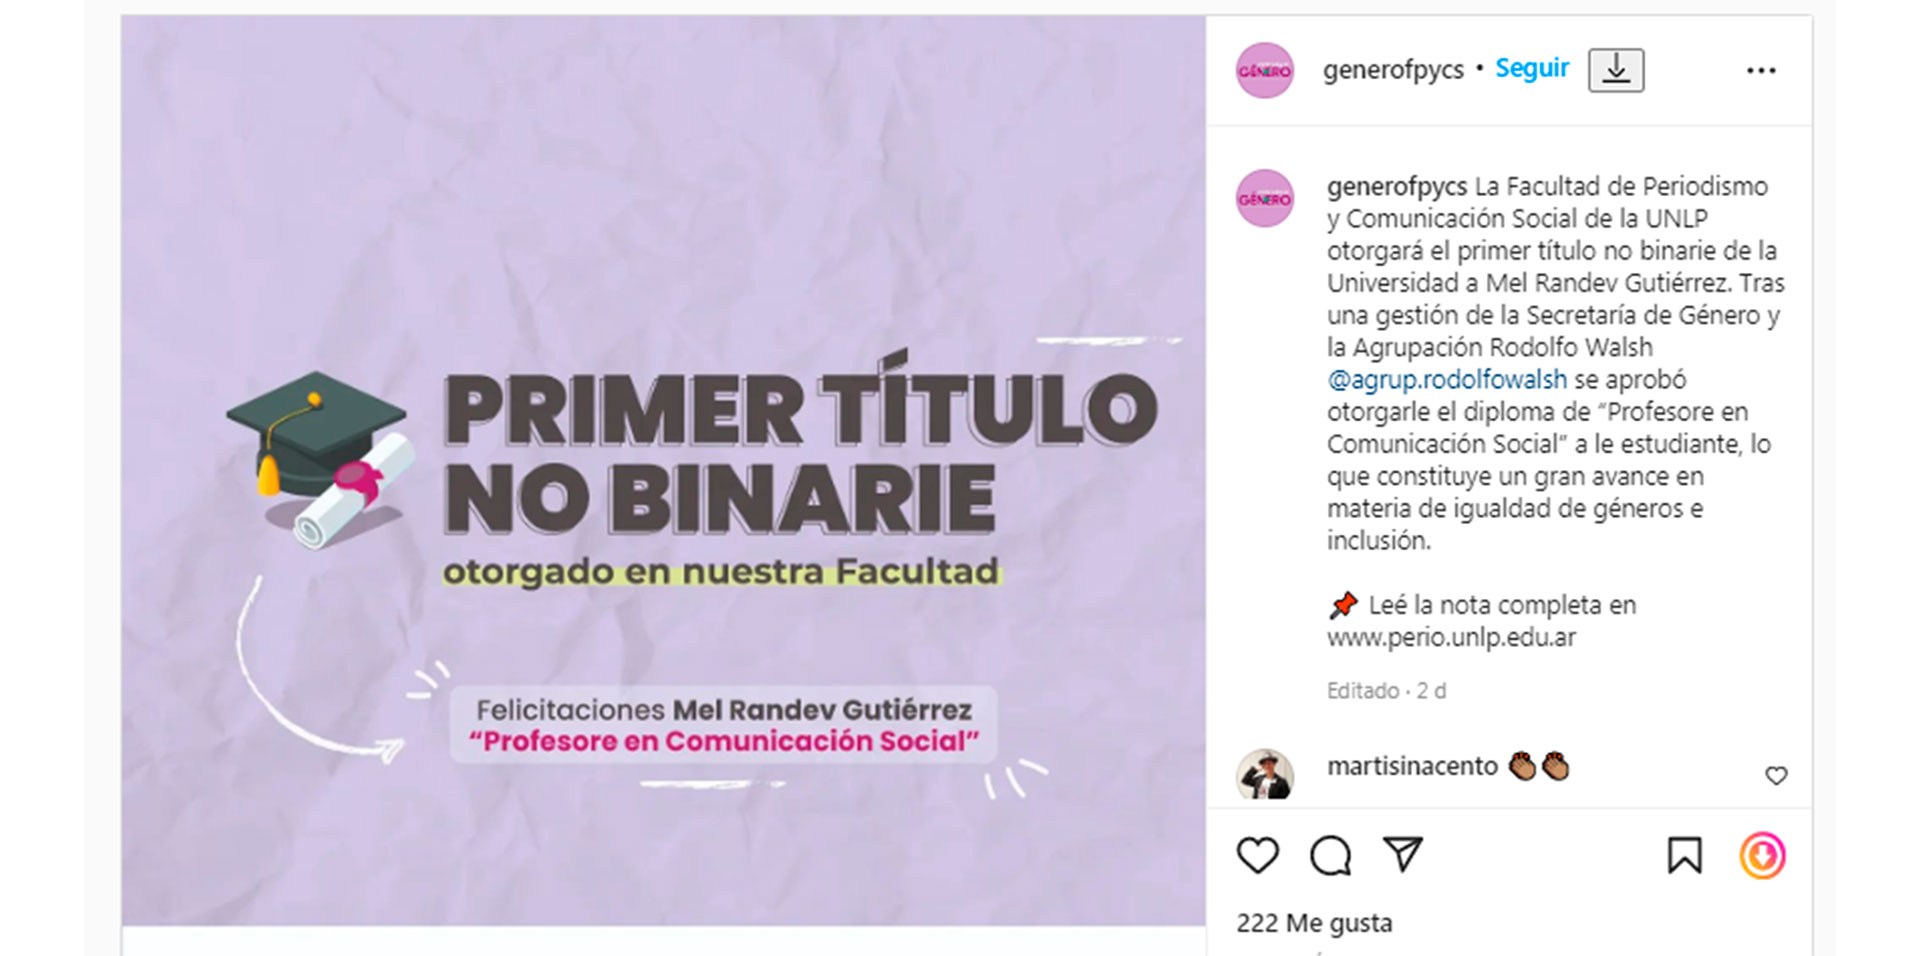 La Facultad de Periodismo de la UNLP entregará el primer título no binarie a Mel Randev Gutiérrez.